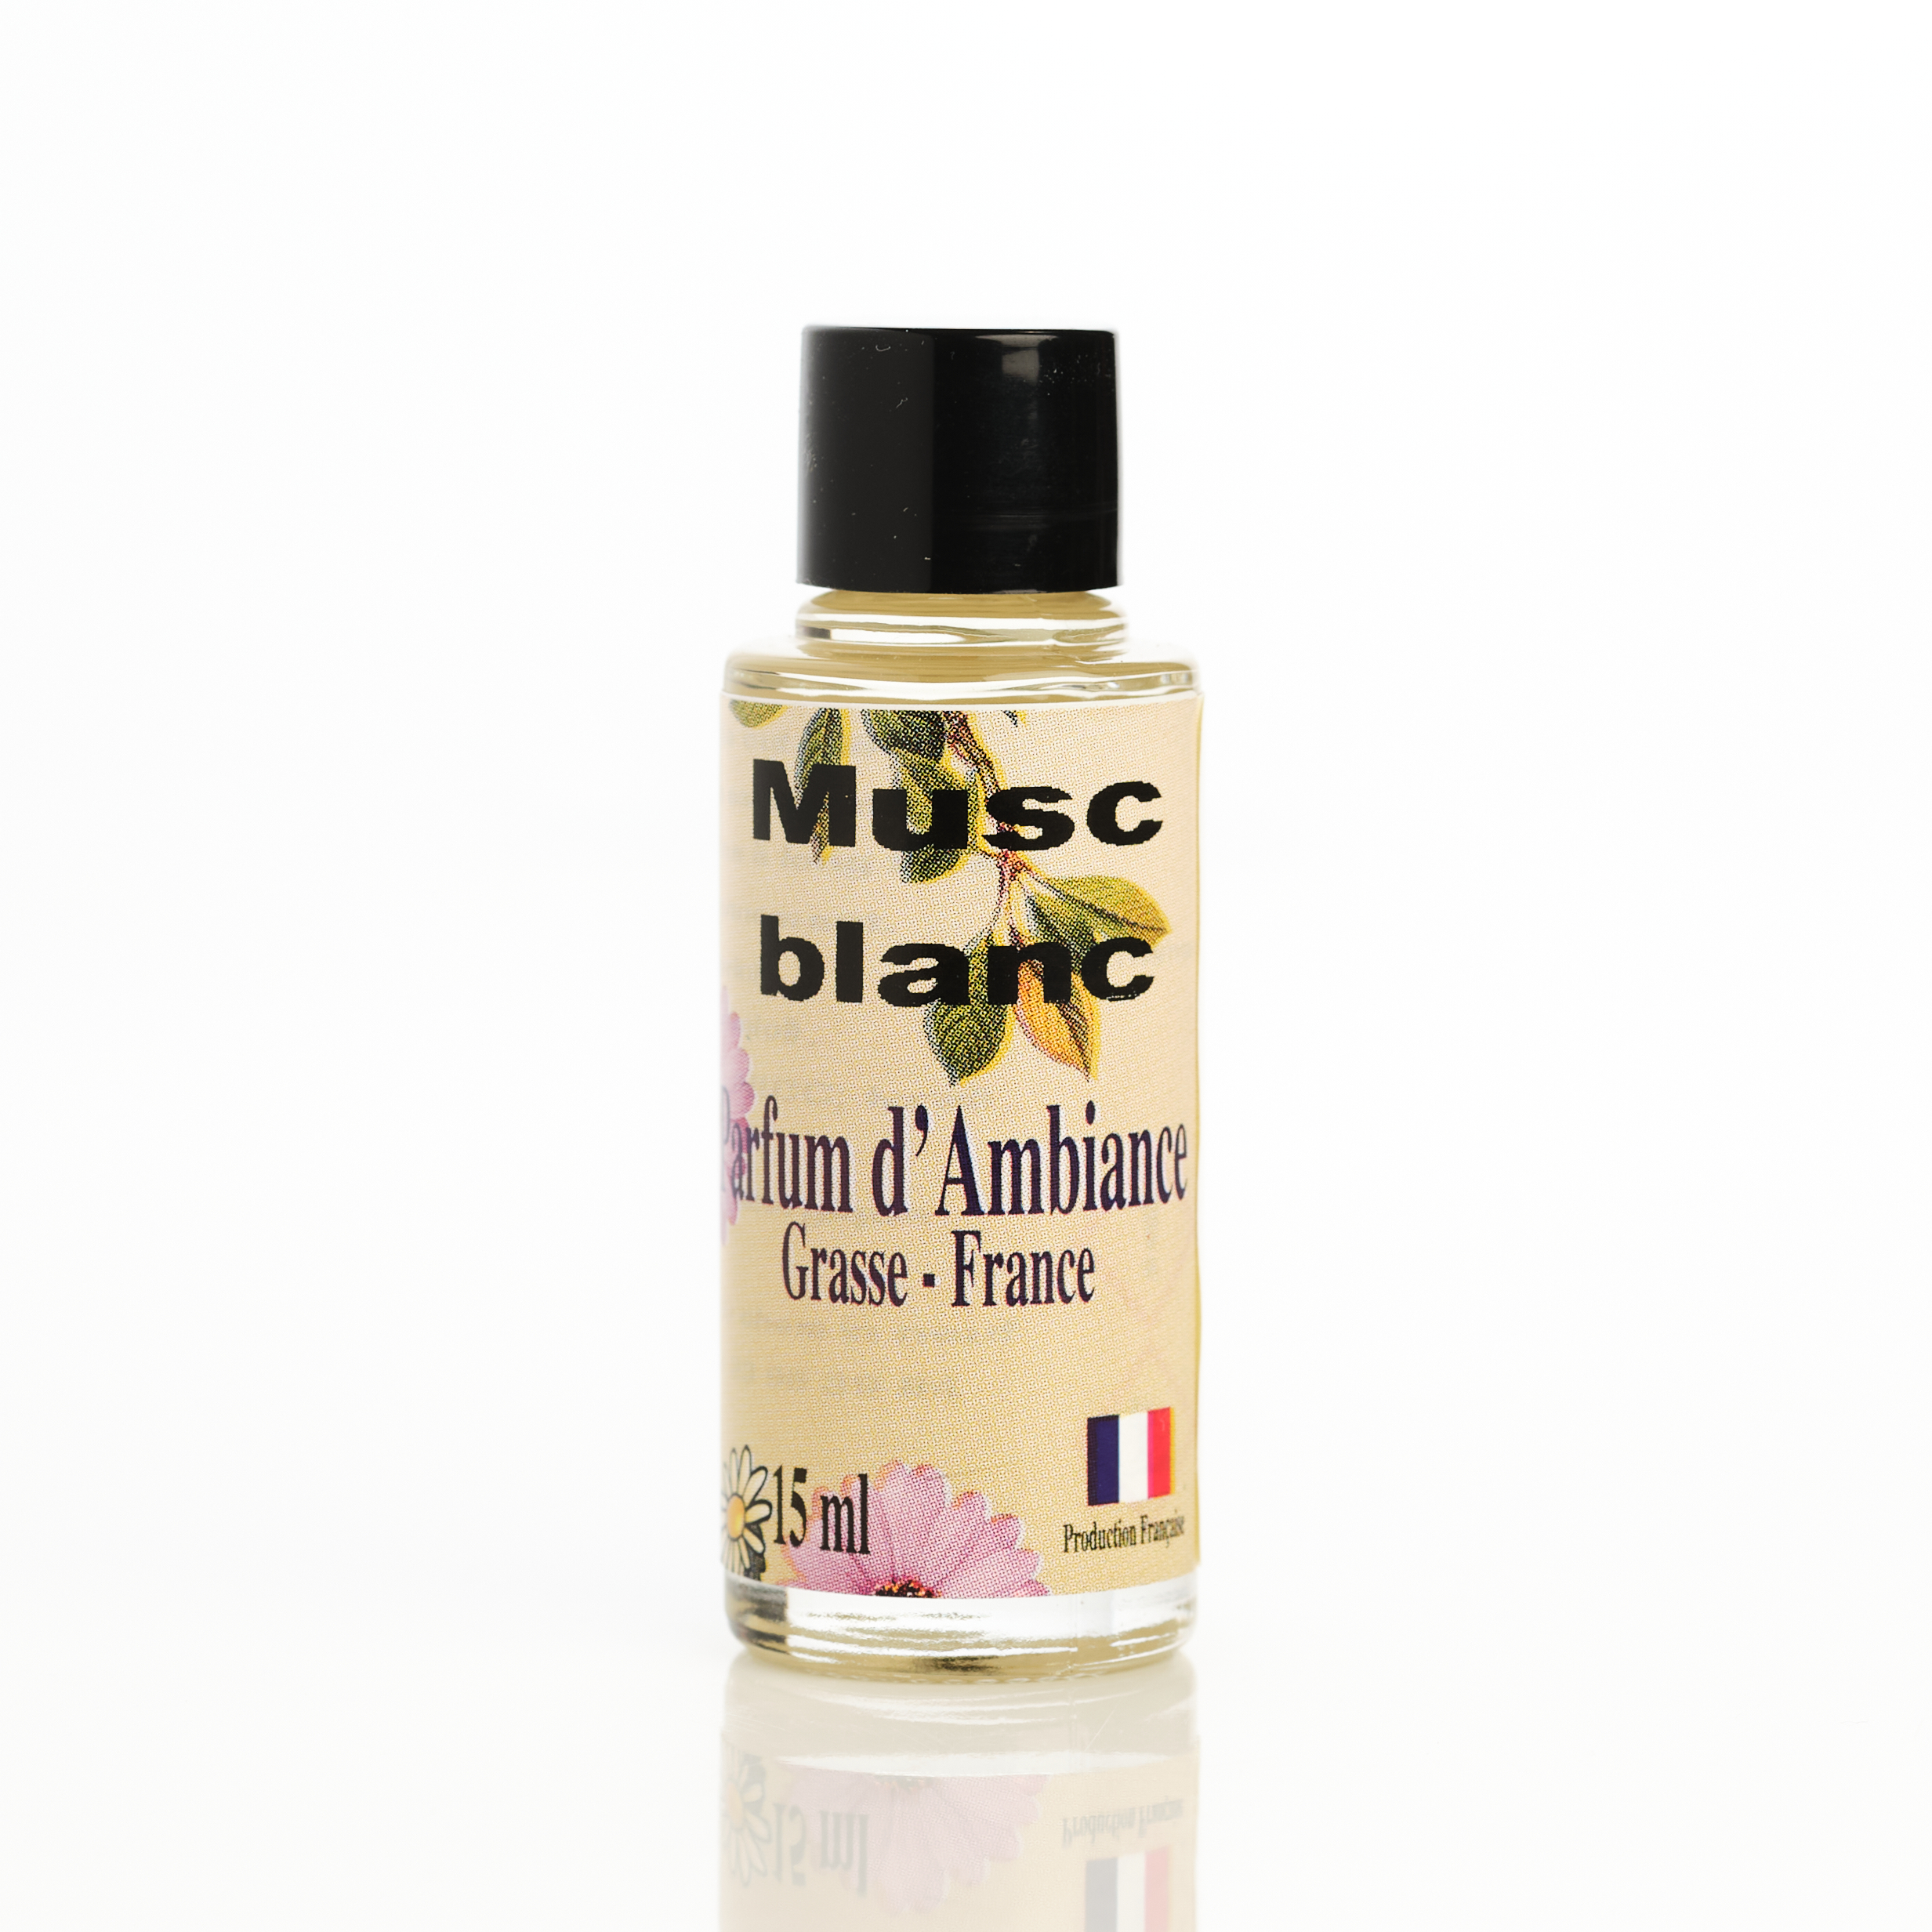 achat concentré parfum dambiance Grasse musc blanc pour parfumer la maison odeur maison fraîche